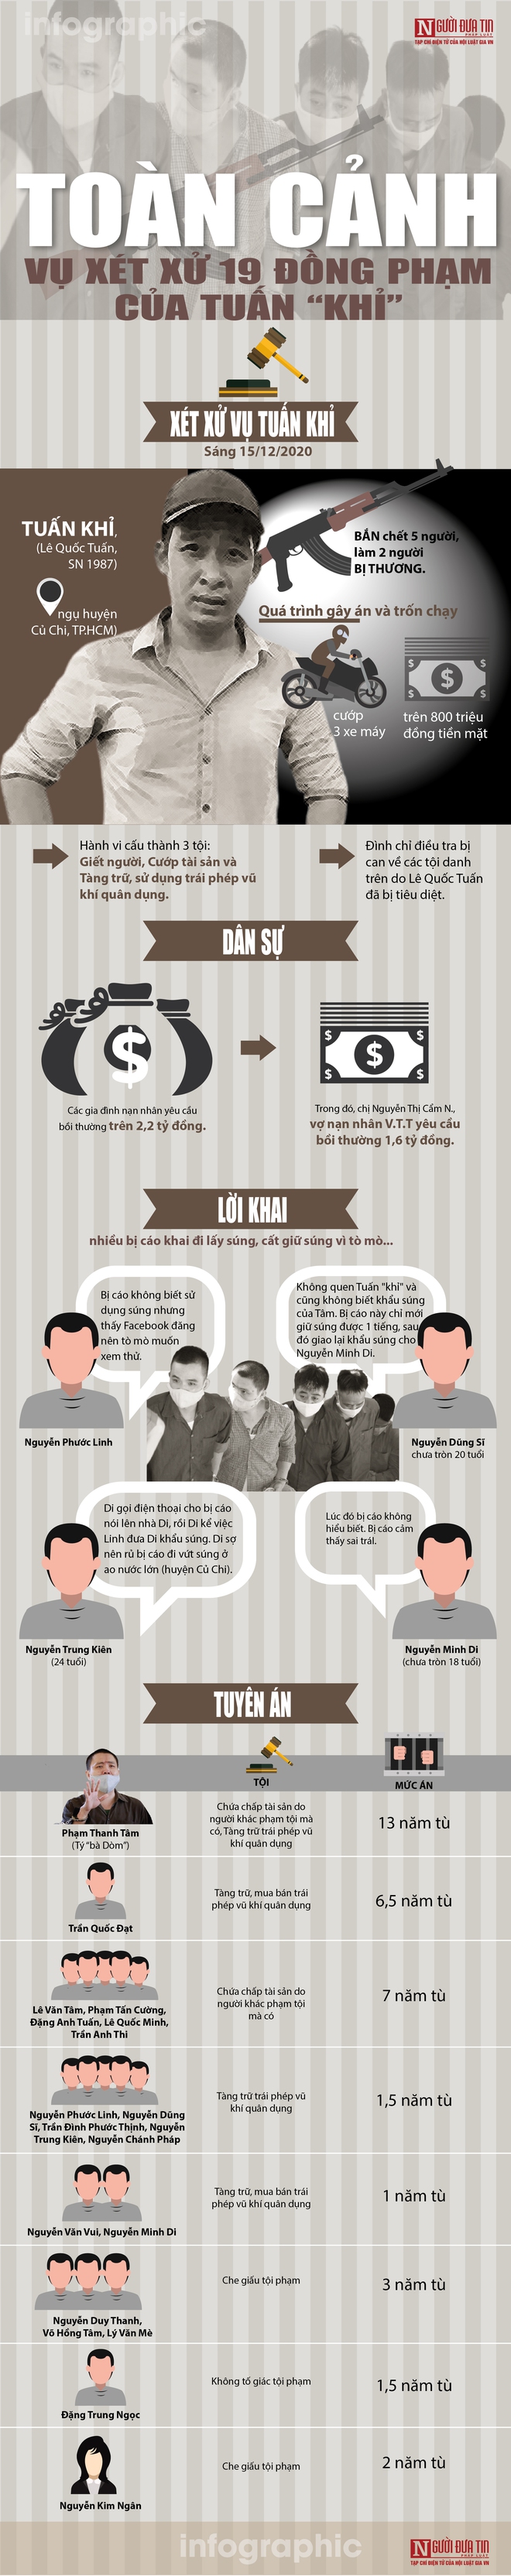 Infographic: Toàn cảnh vụ xét xử 19 đồng phạm của Tuấn “khỉ” - Ảnh 1.